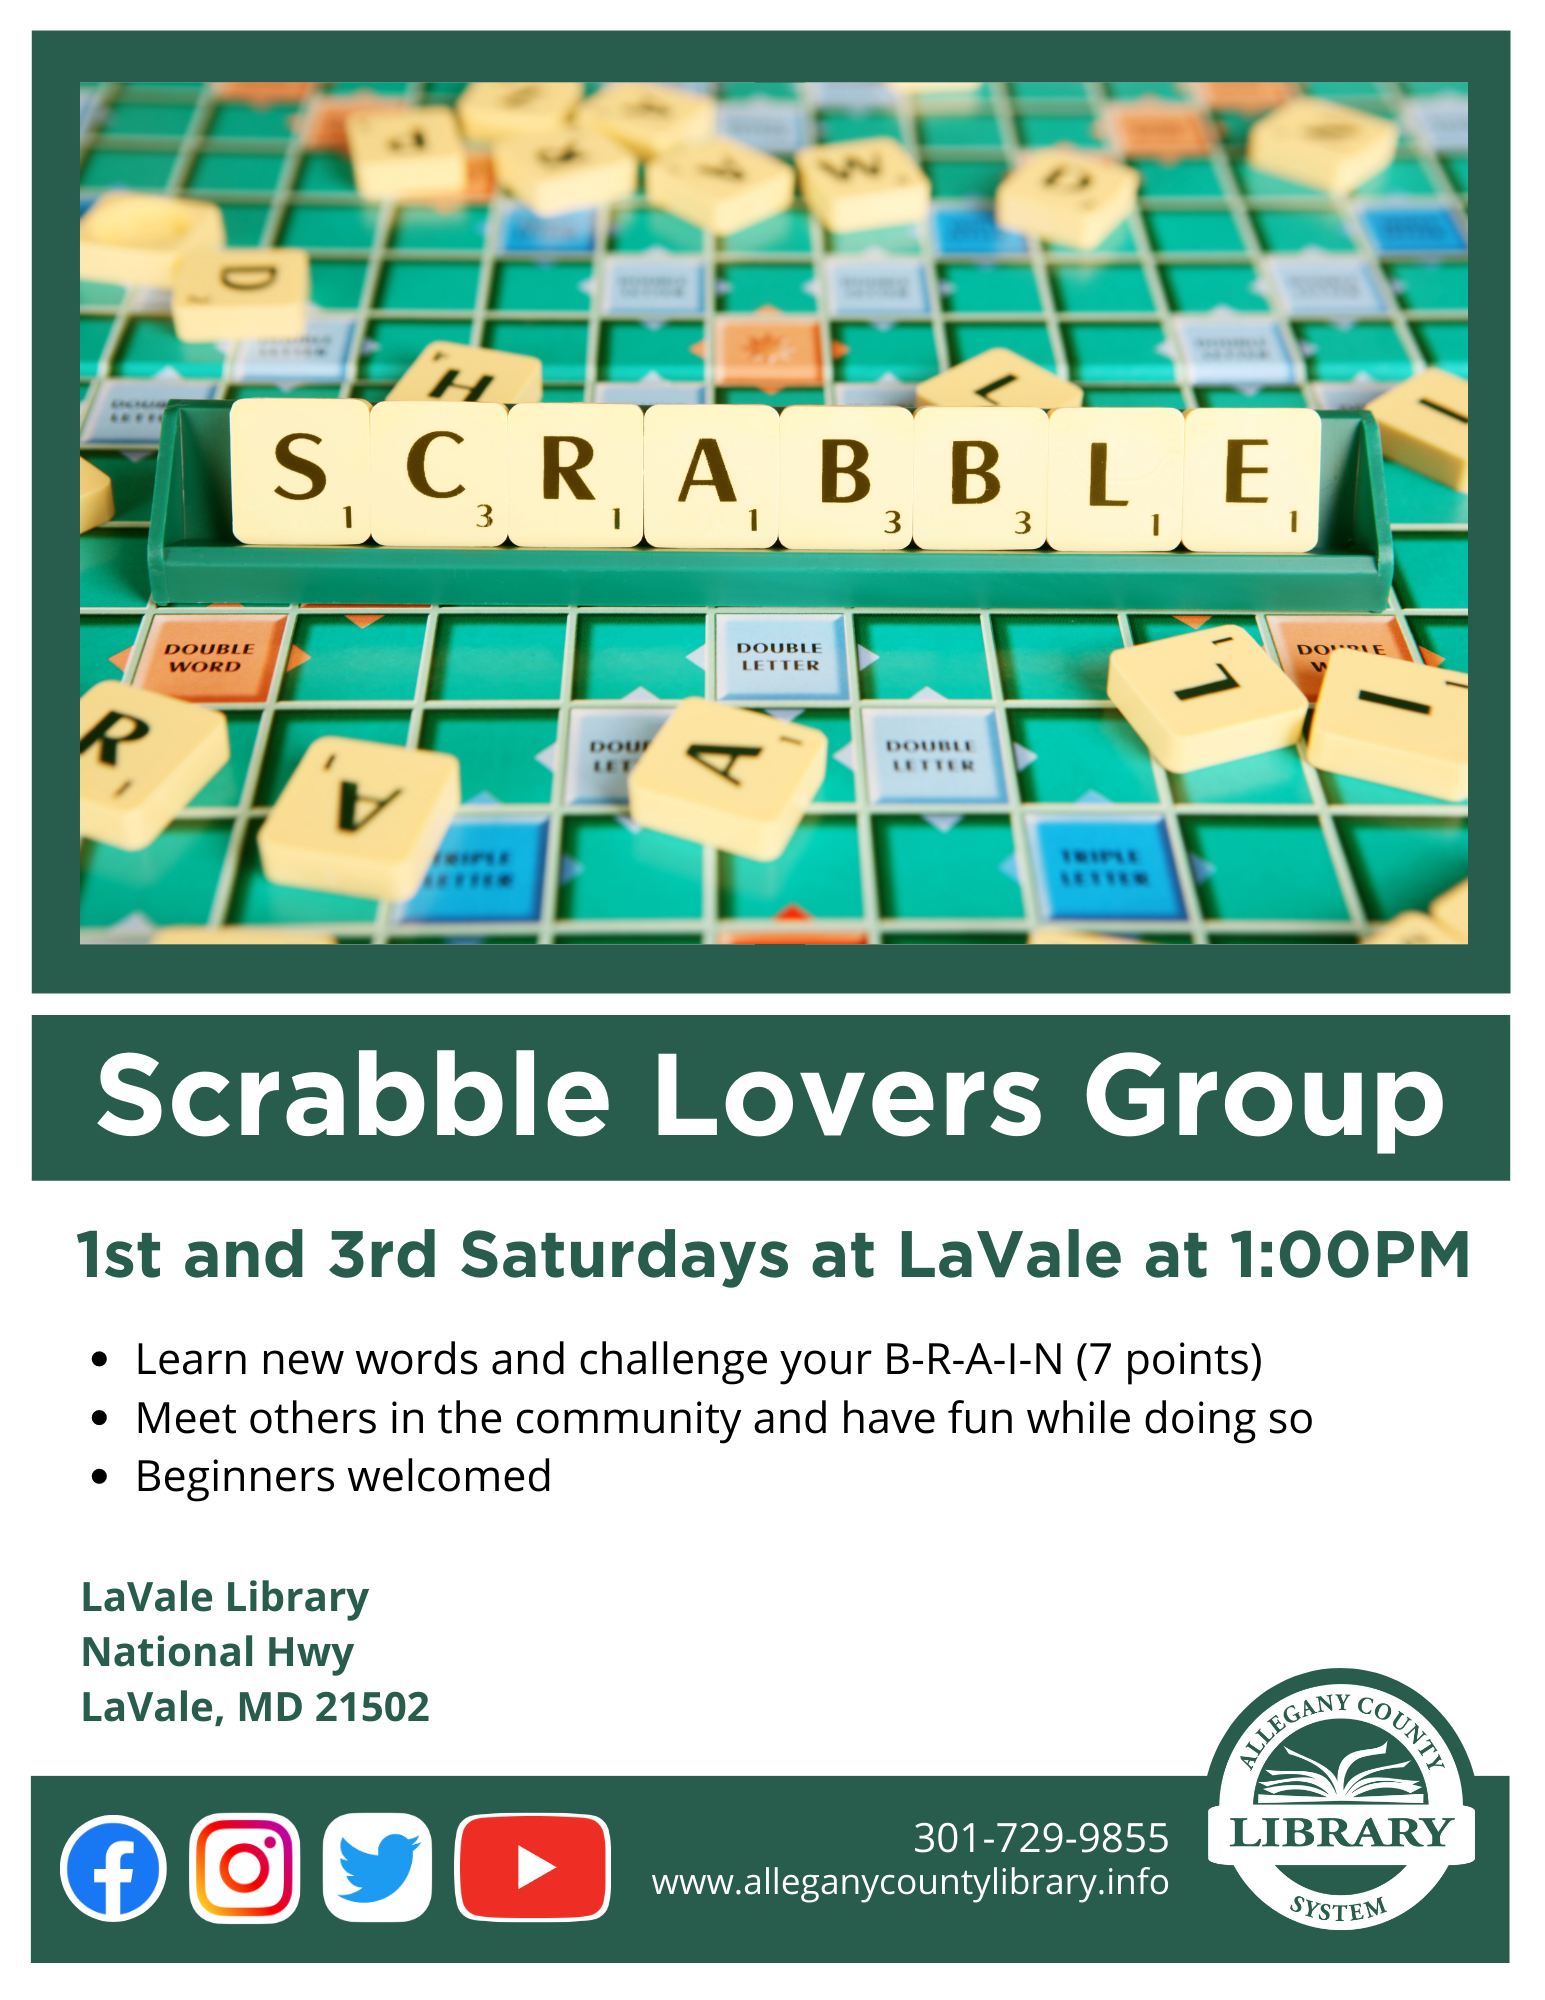 Scrabble Group details